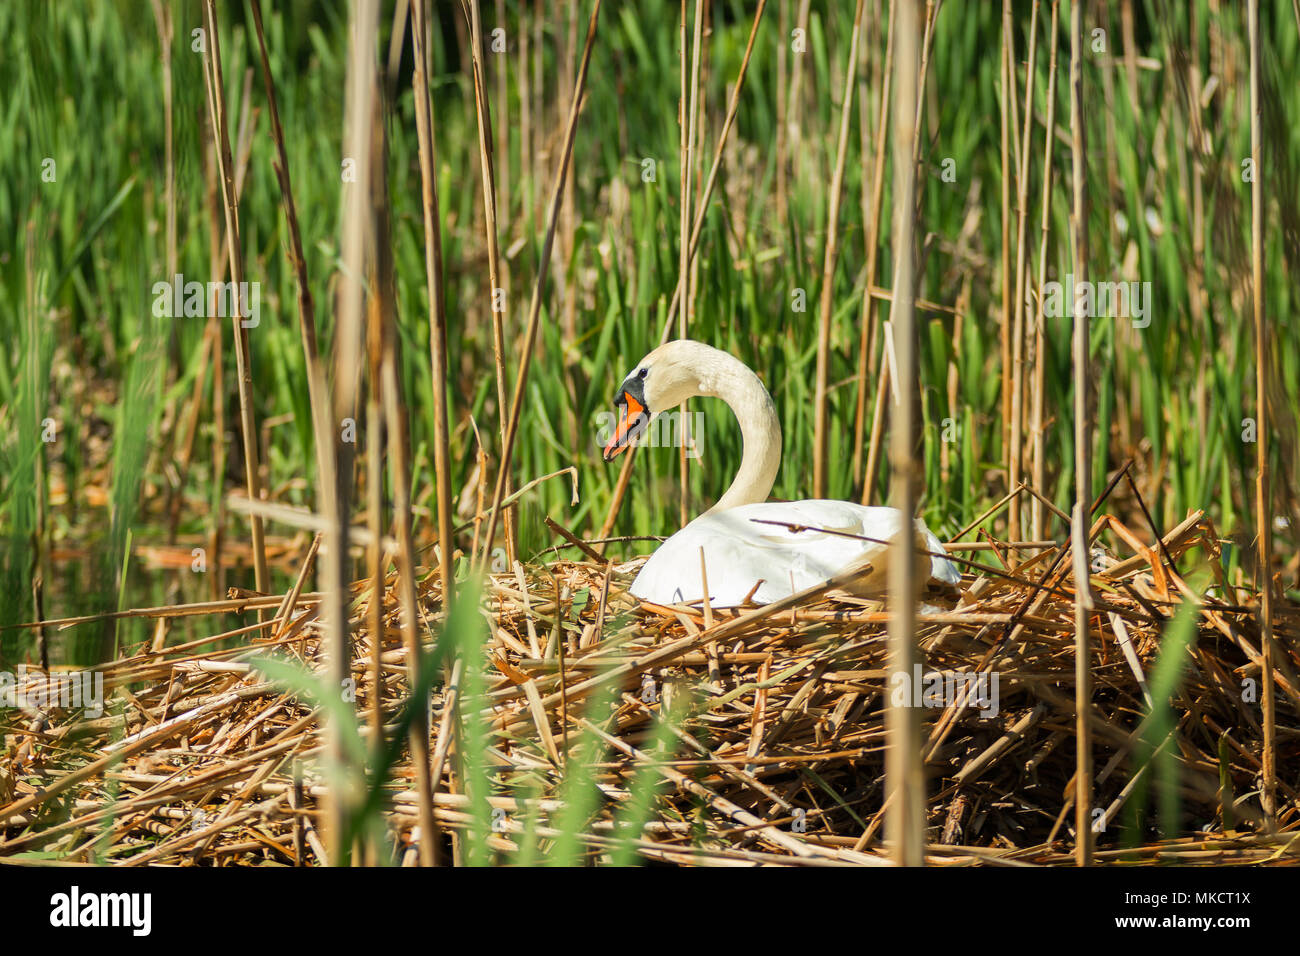 Ein großer, weißer Schwan sitzen in einem Nest, ein Nest mit Schwan auf der Oberfläche eines Sees von Schilf umgeben. Stockfoto